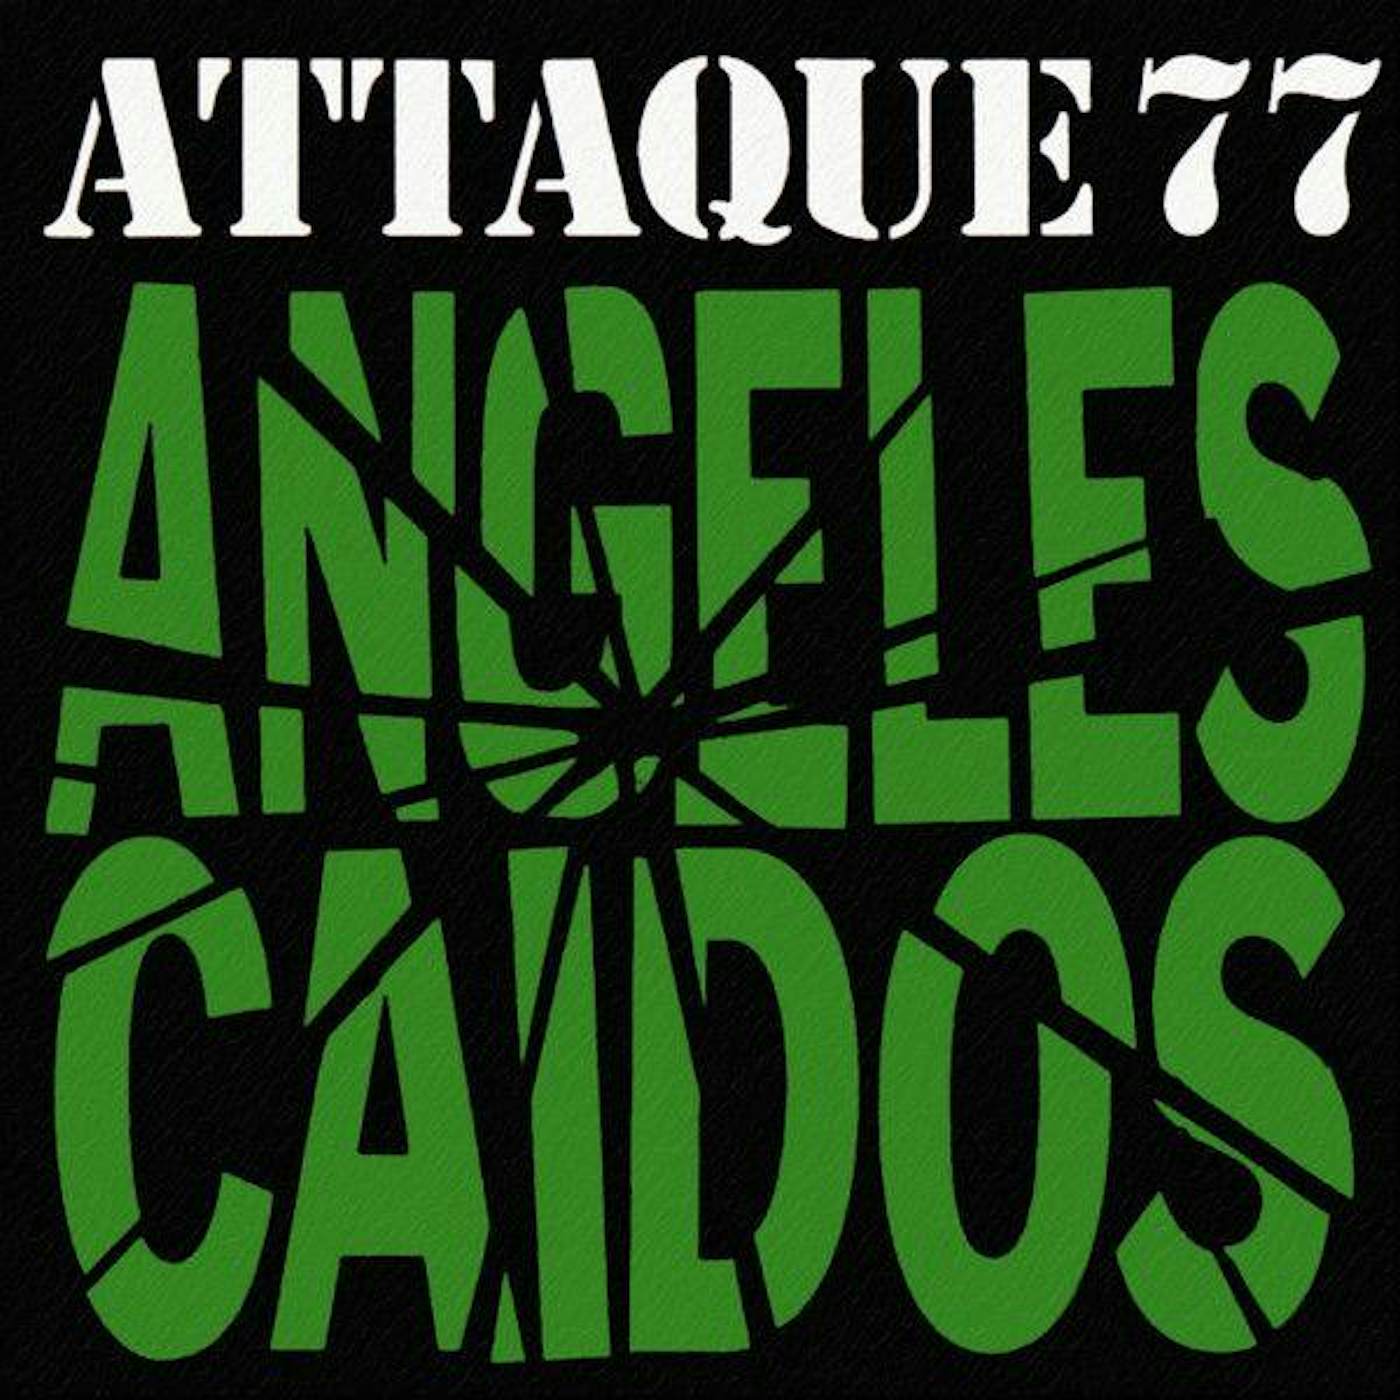 Attaque 77 ANGELES CAIDOS Vinyl Record